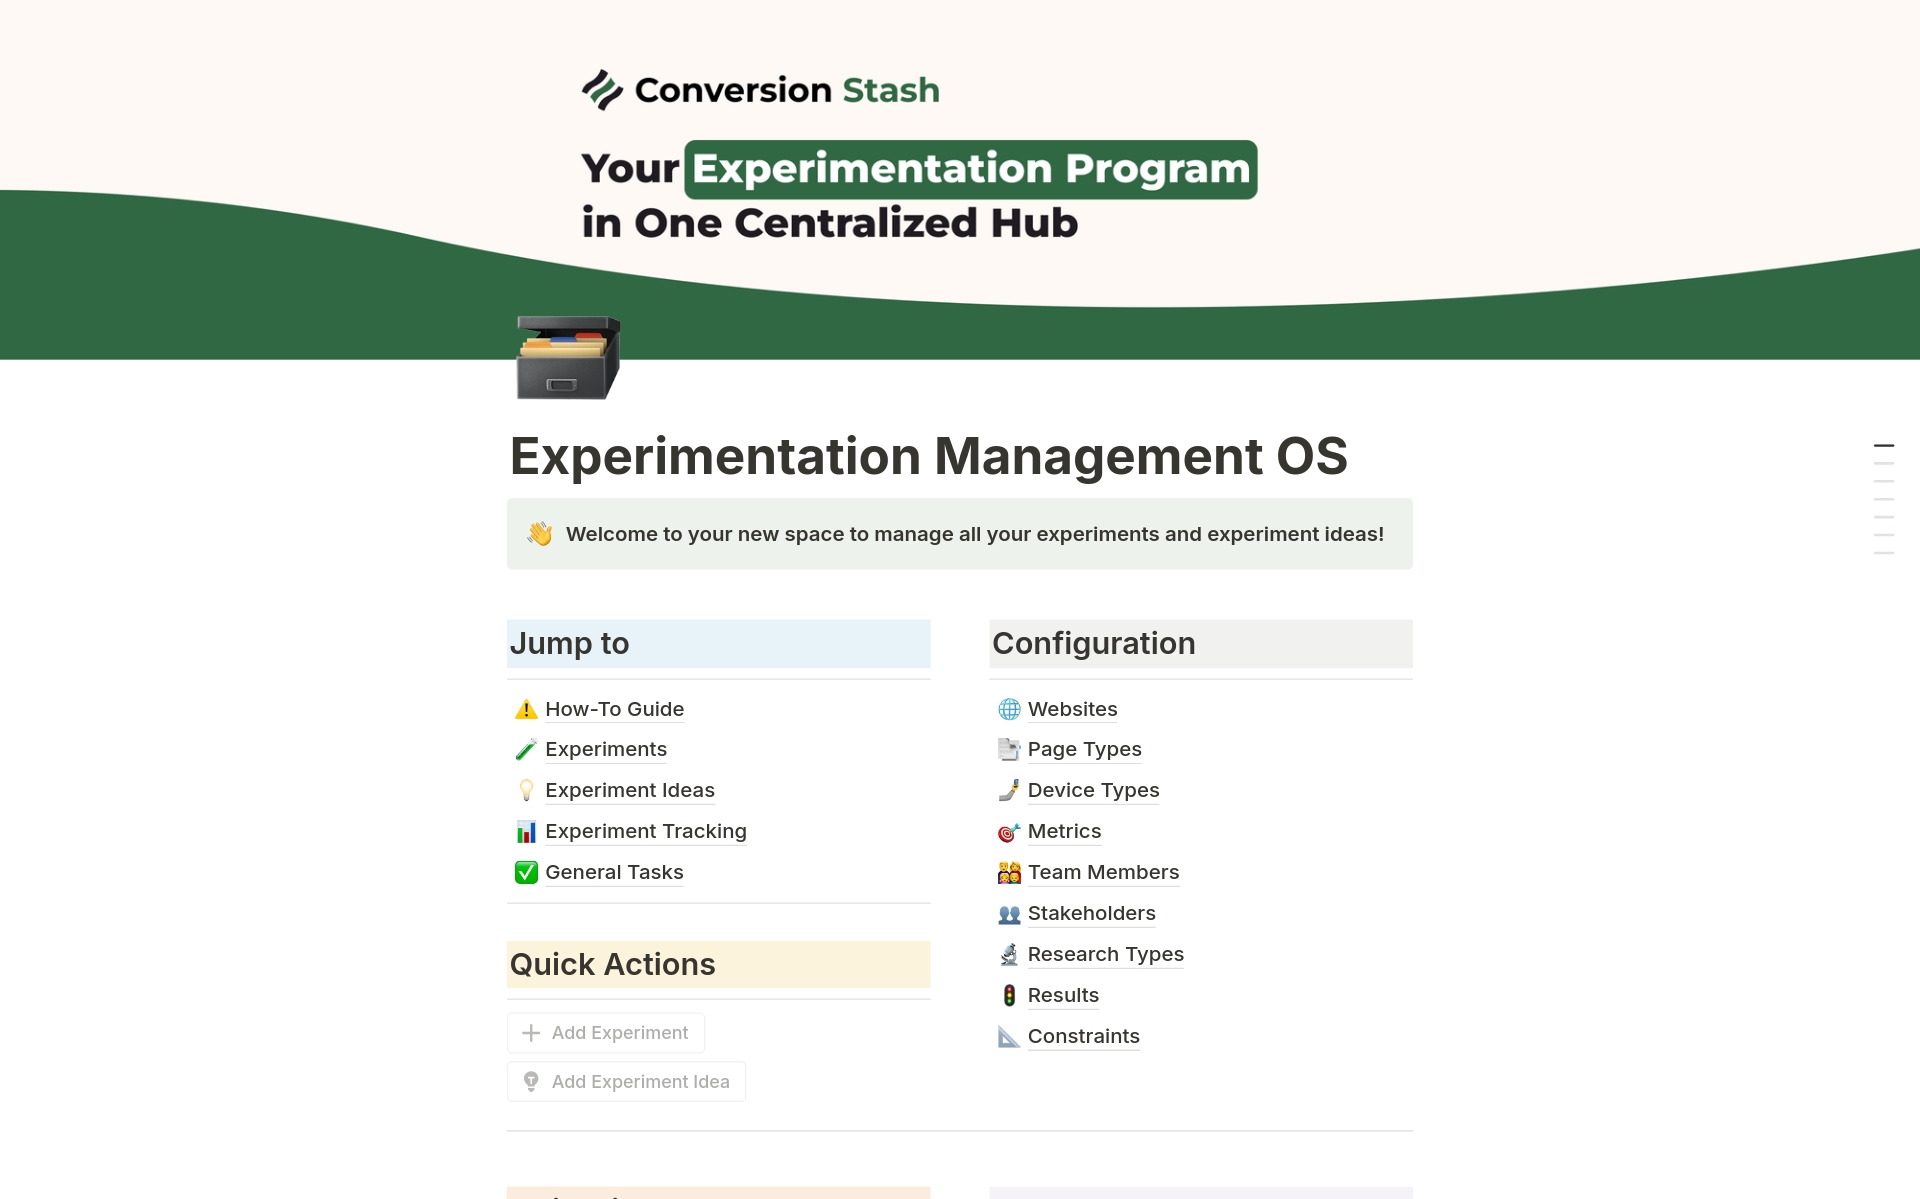 Vista previa de plantilla para Experimentation Management OS